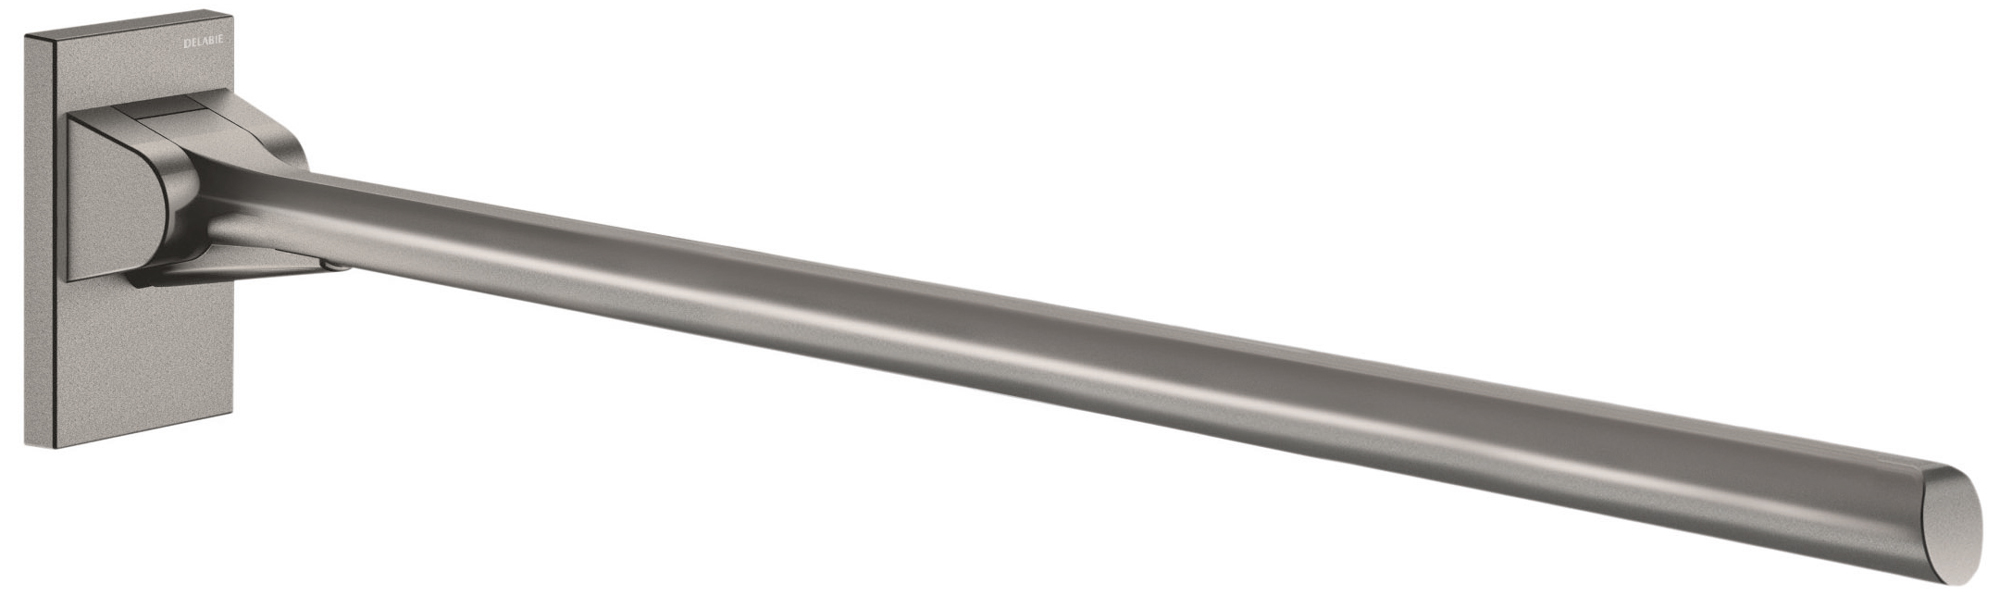 DELABIE Be-Line exkluzív fali felhajtható kapaszkodó 5mm hátfallal, D=42mm, alumínium, antracit, 850mm